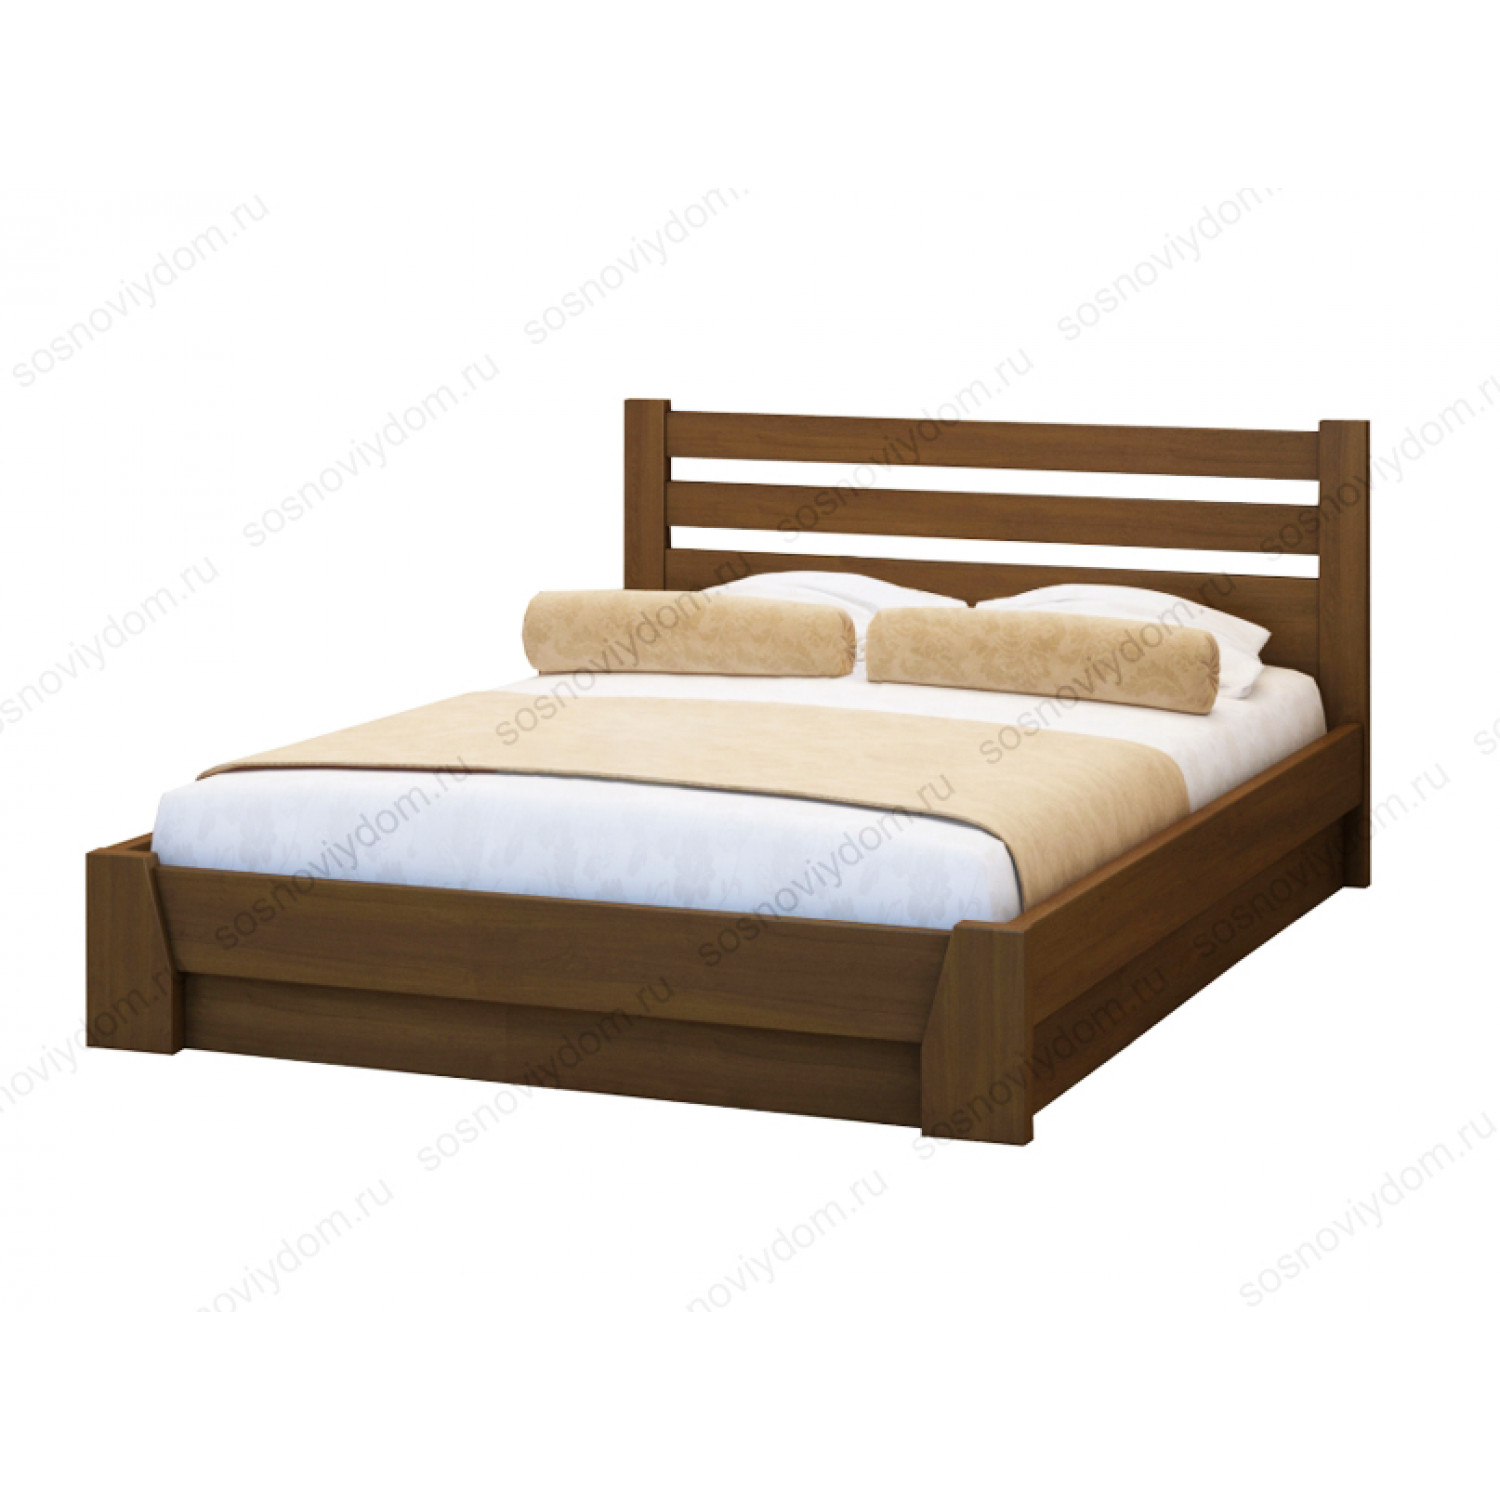 Купить кровать из массива в спб